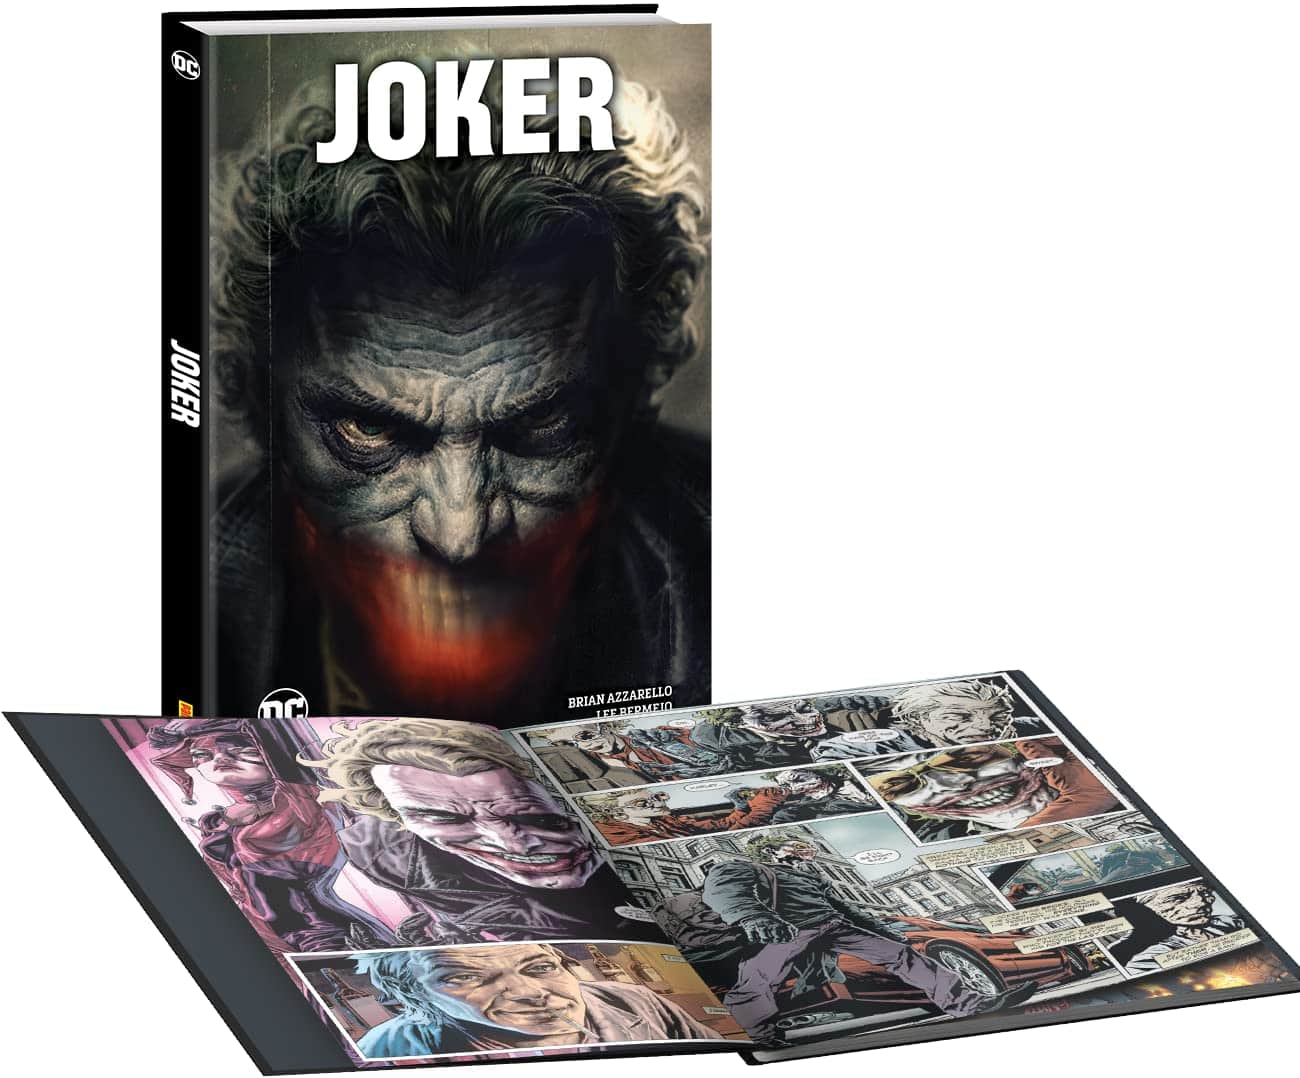 Joker graphic novel